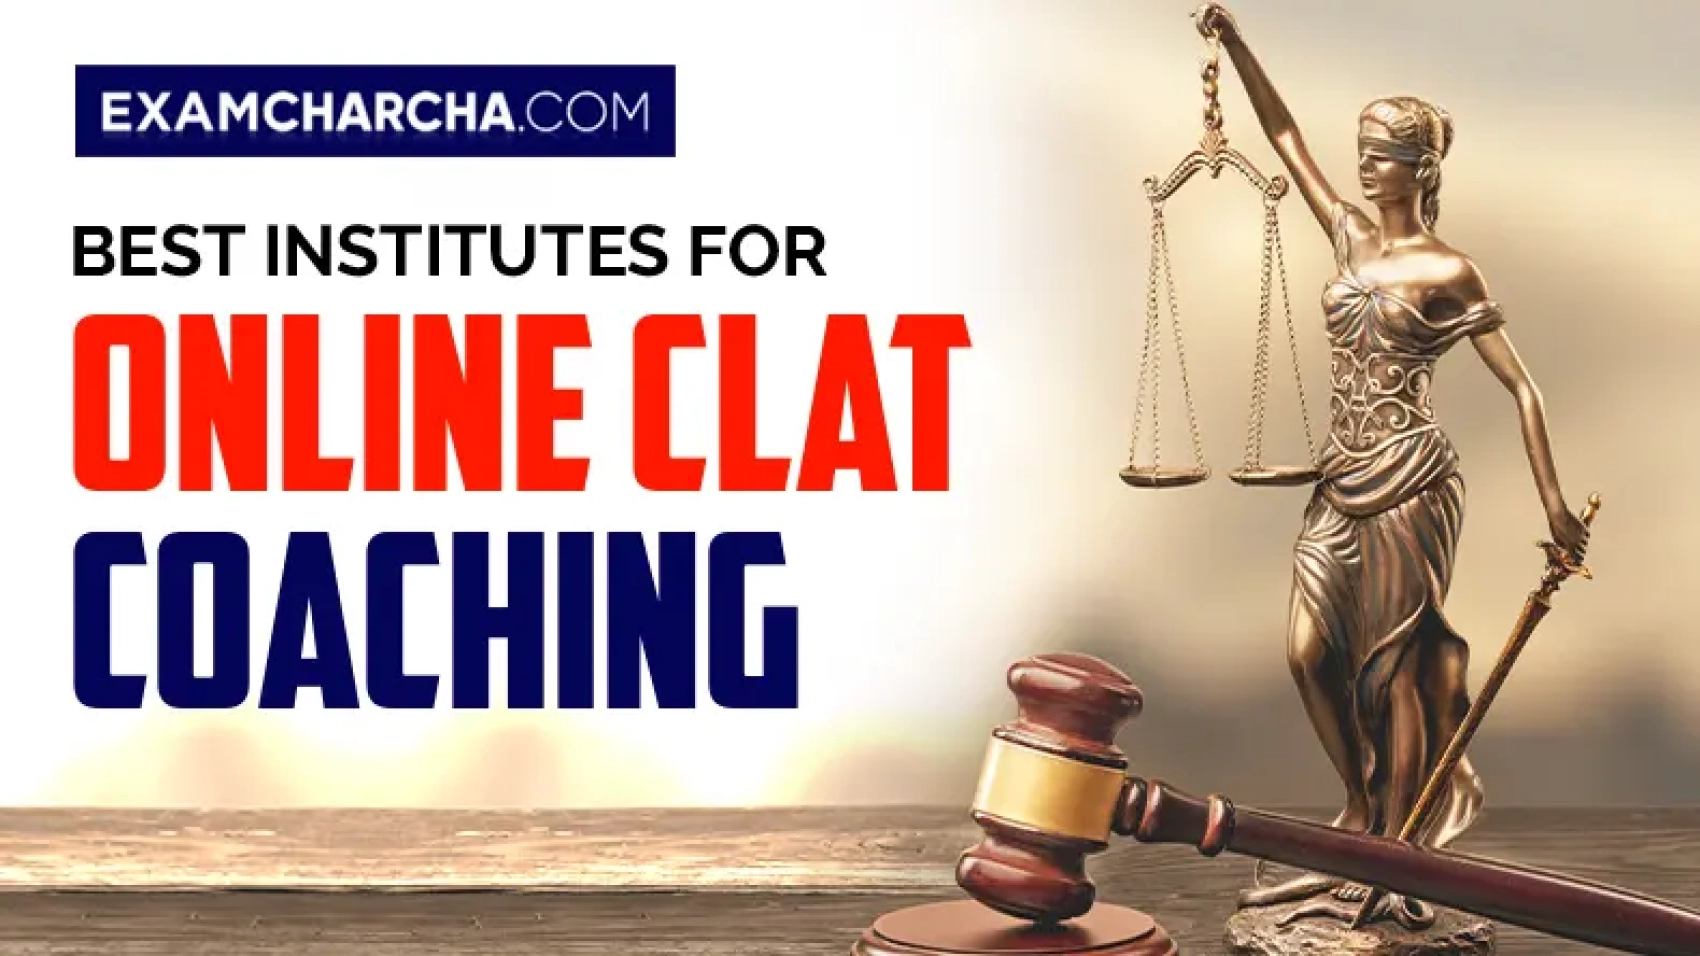 Online CLAT Coaching